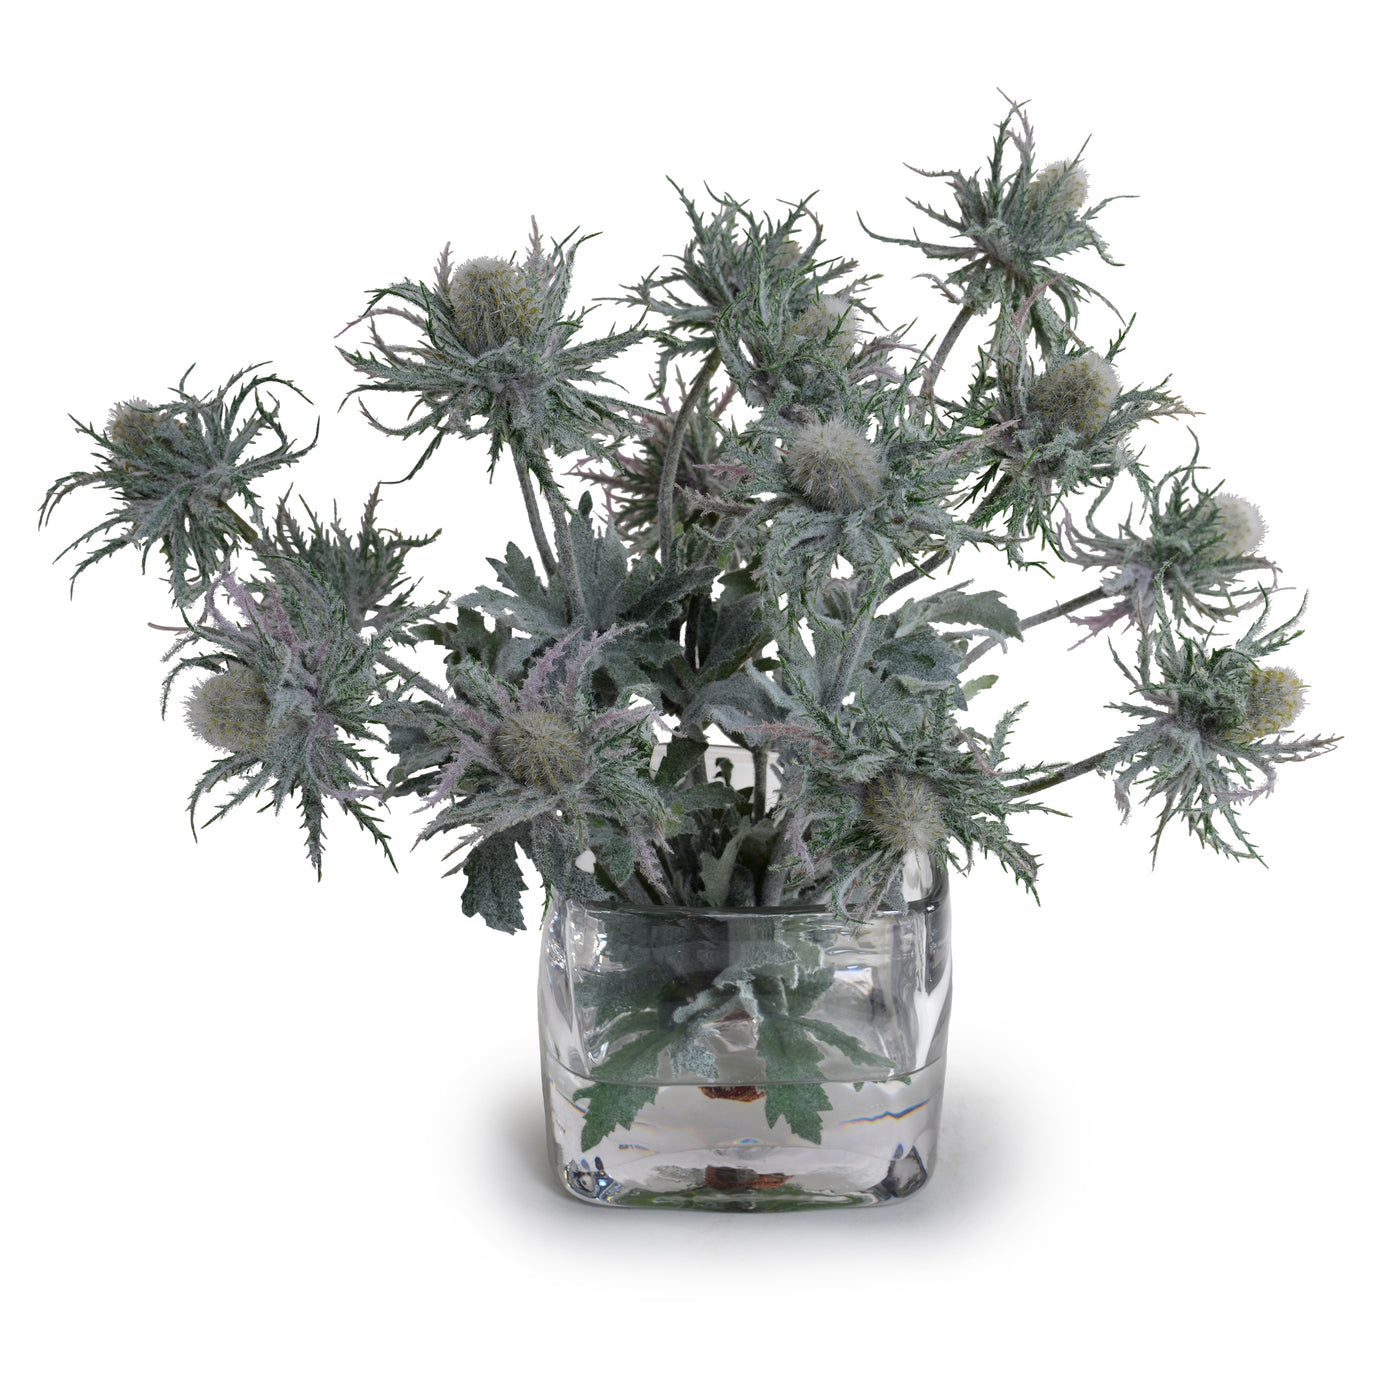 Thistle (Eryngium) Bouquet in Glass 13"H